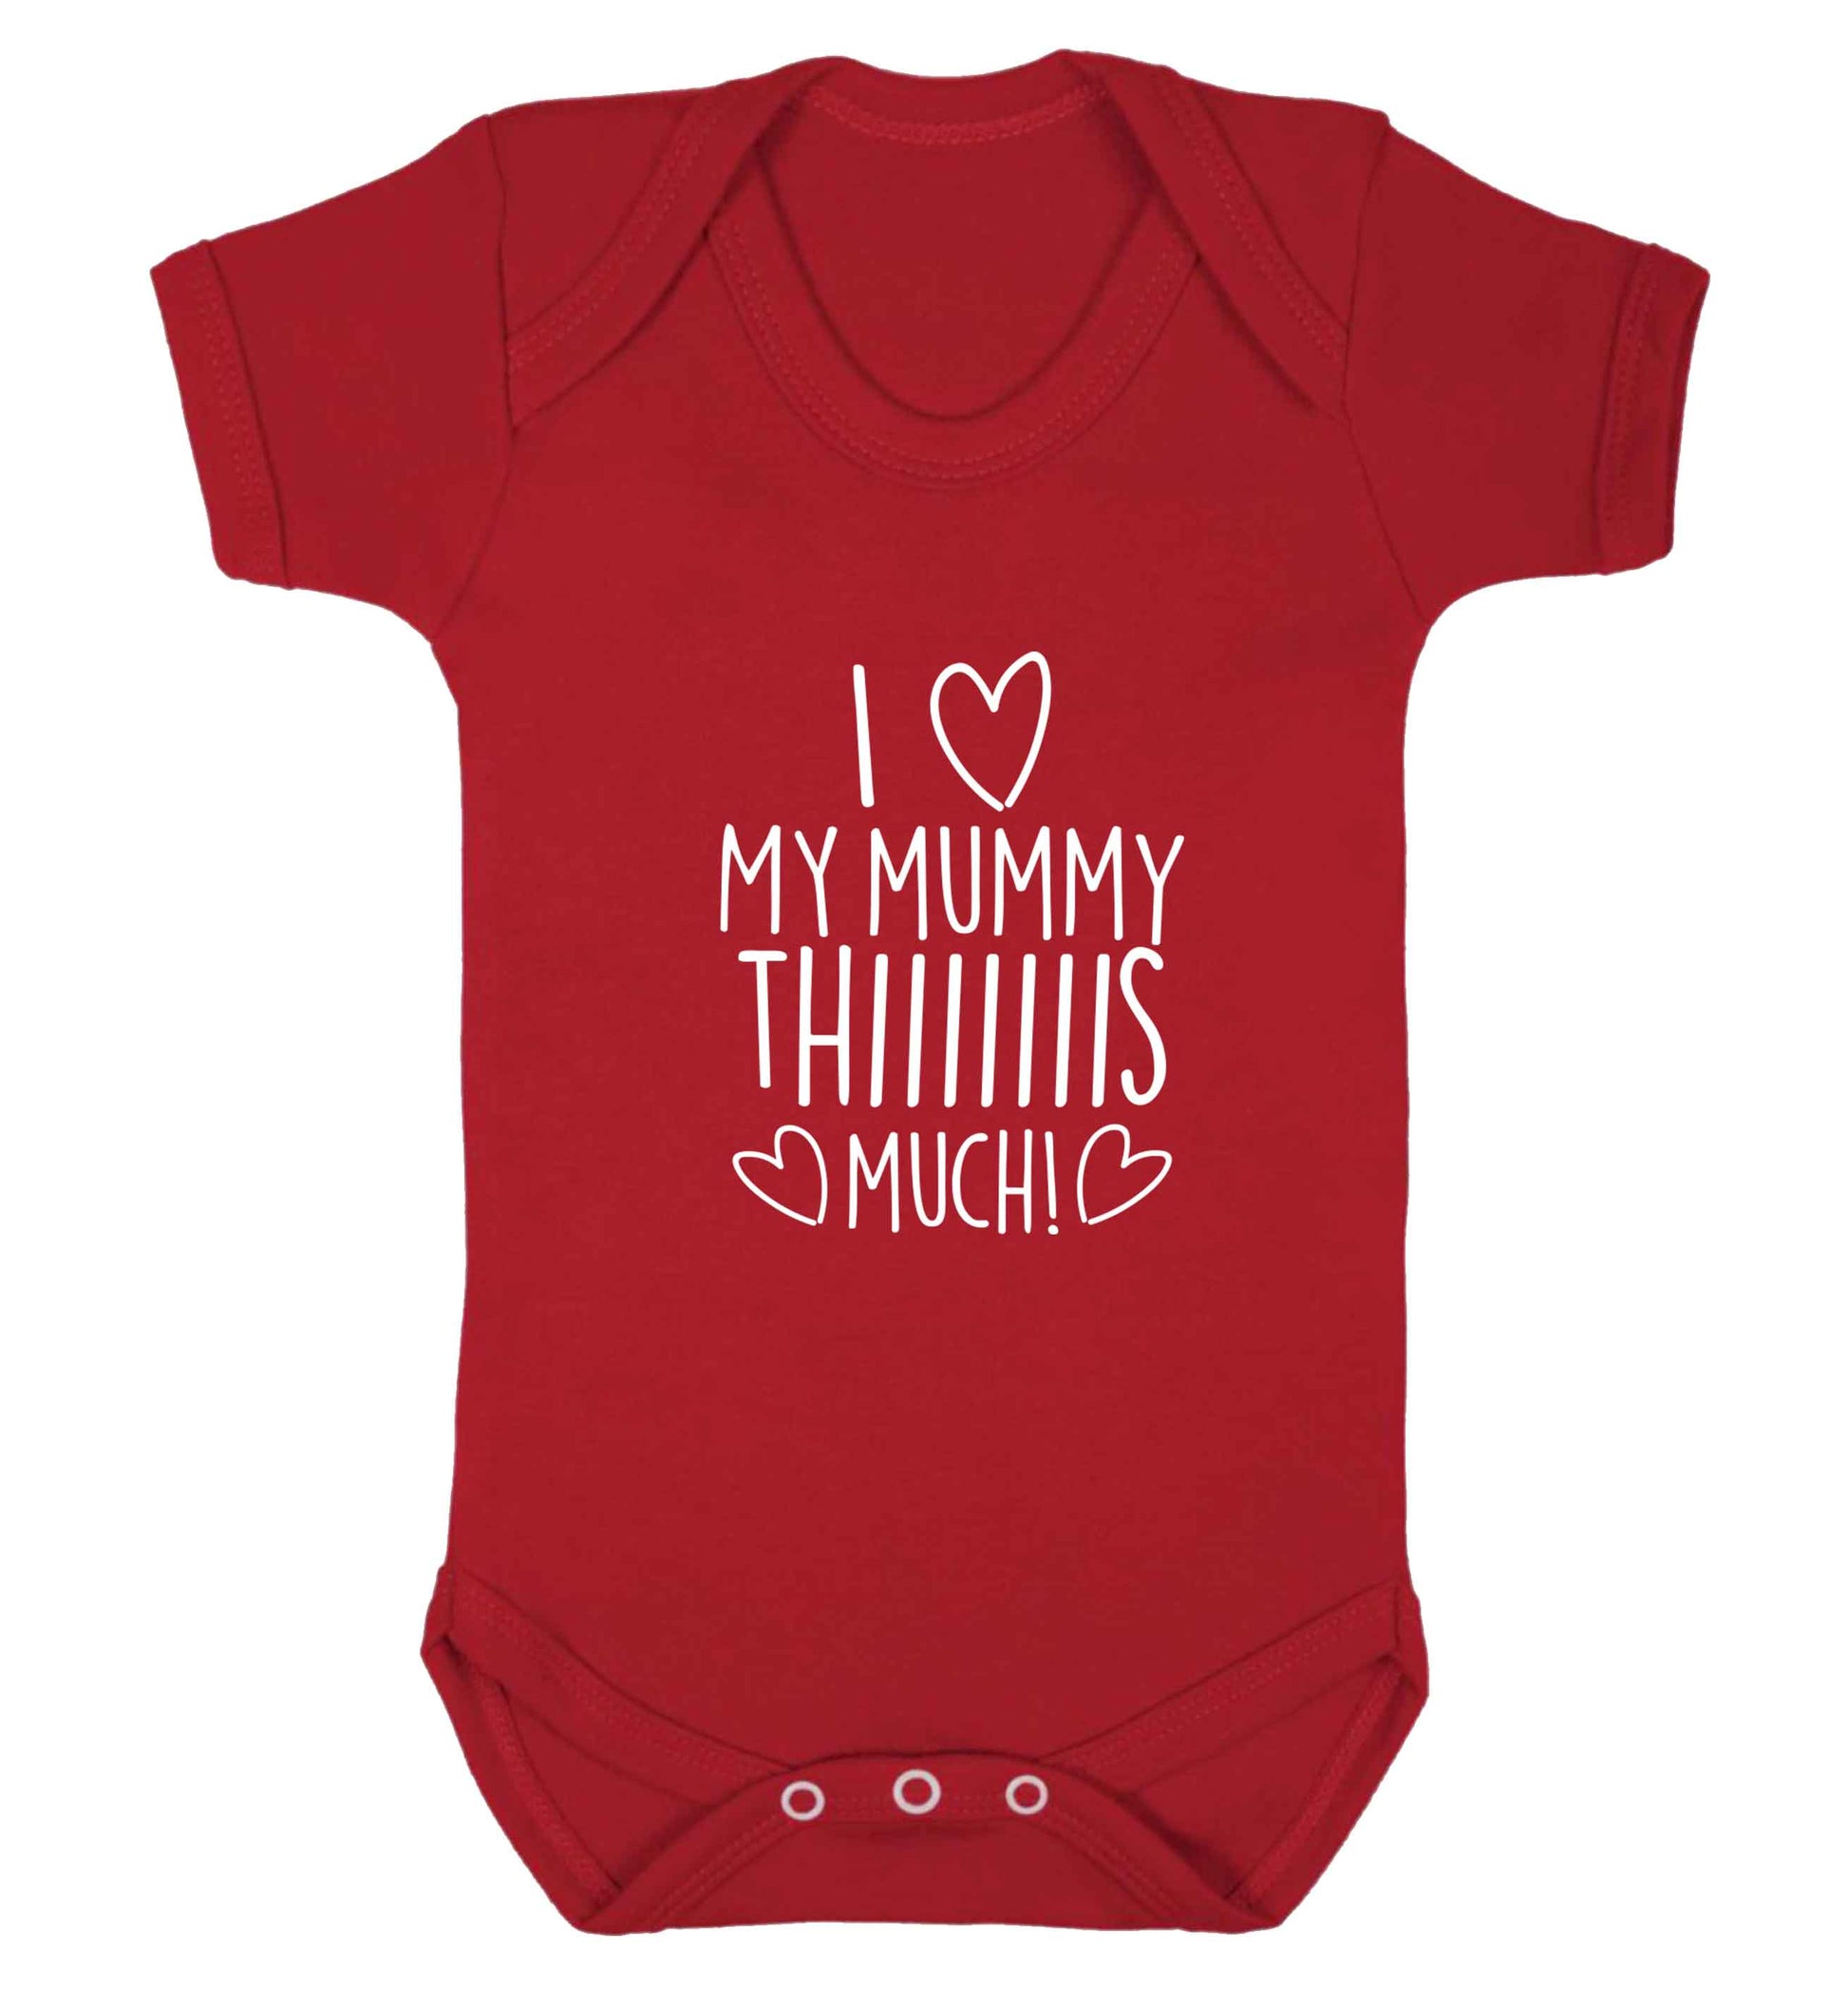 I love my mummy thiiiiis much! baby vest red 18-24 months